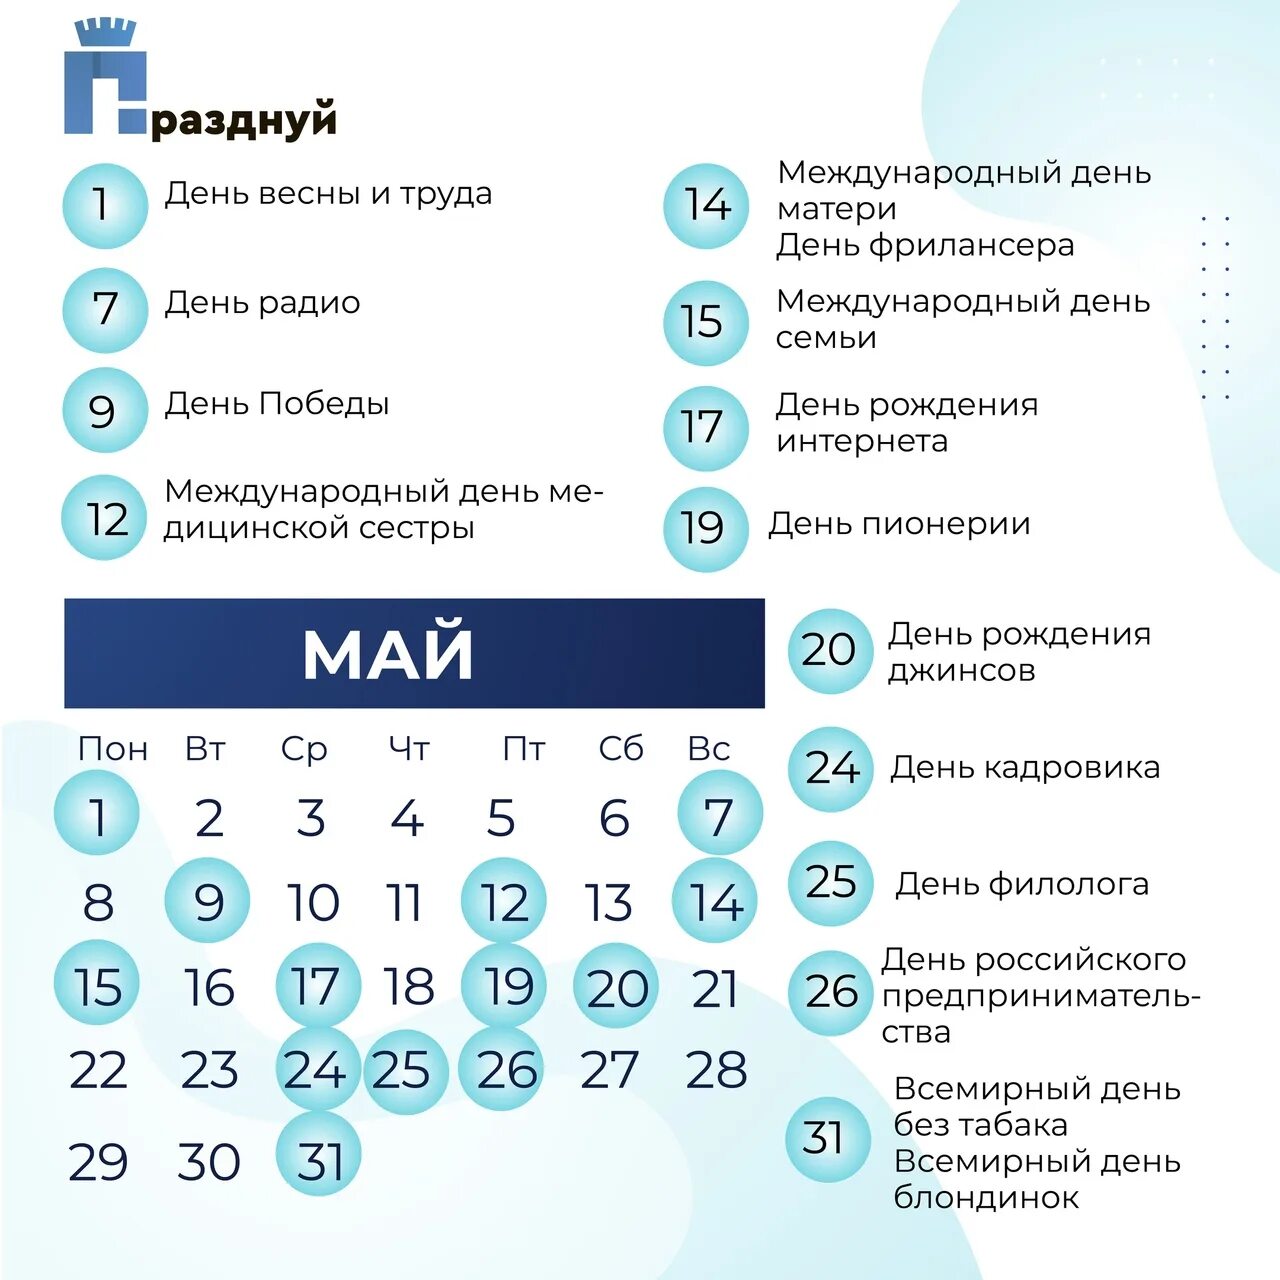 27 мая выходной. Майские выходные 2023. Выходные на майские праздники 2023. Праздники в России 2023. Майские выходные в 2023 году в России.